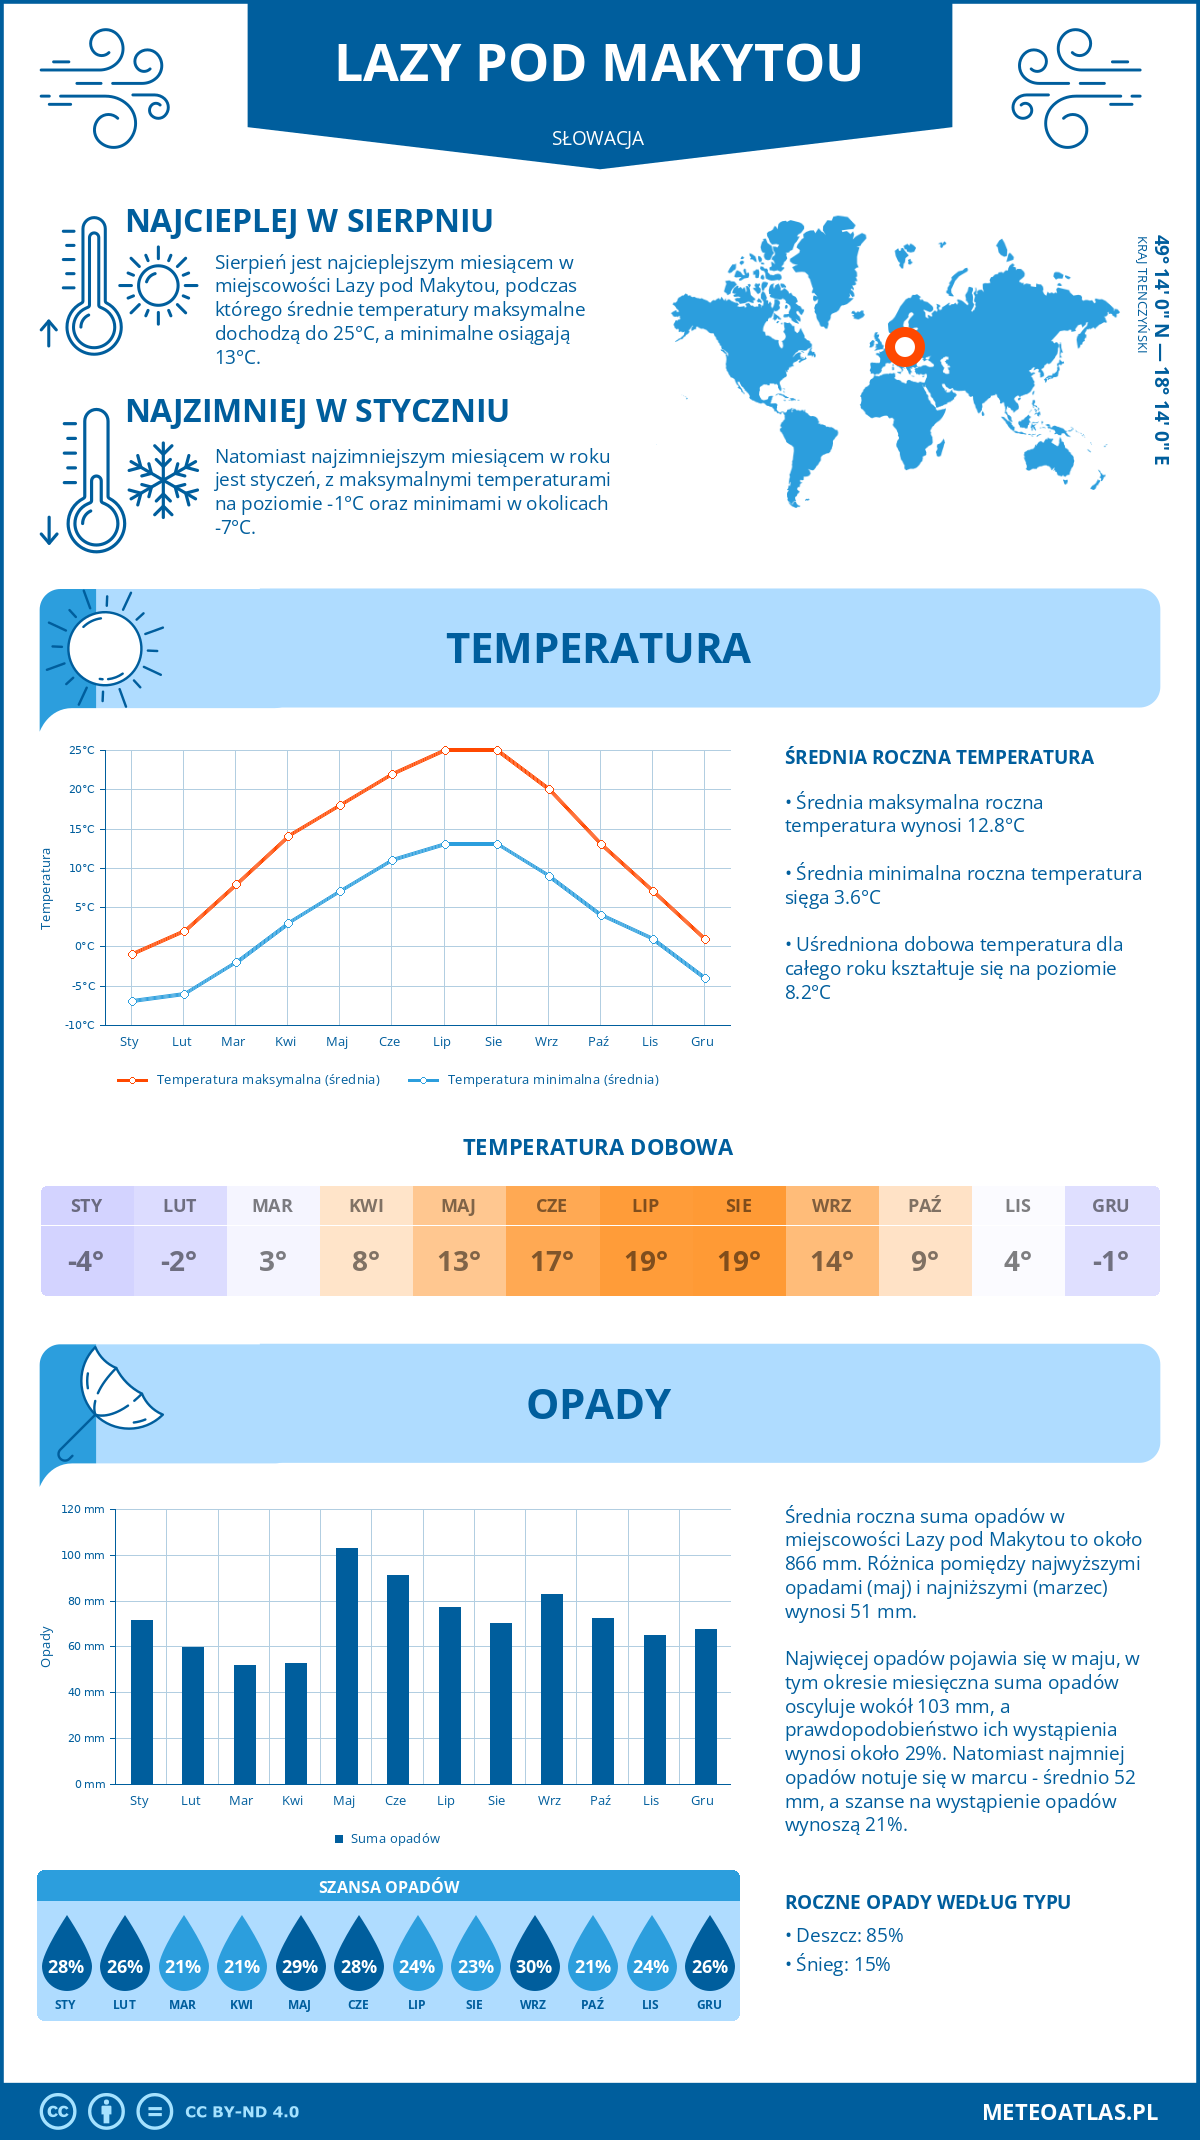 Pogoda Lazy pod Makytou (Słowacja). Temperatura oraz opady.